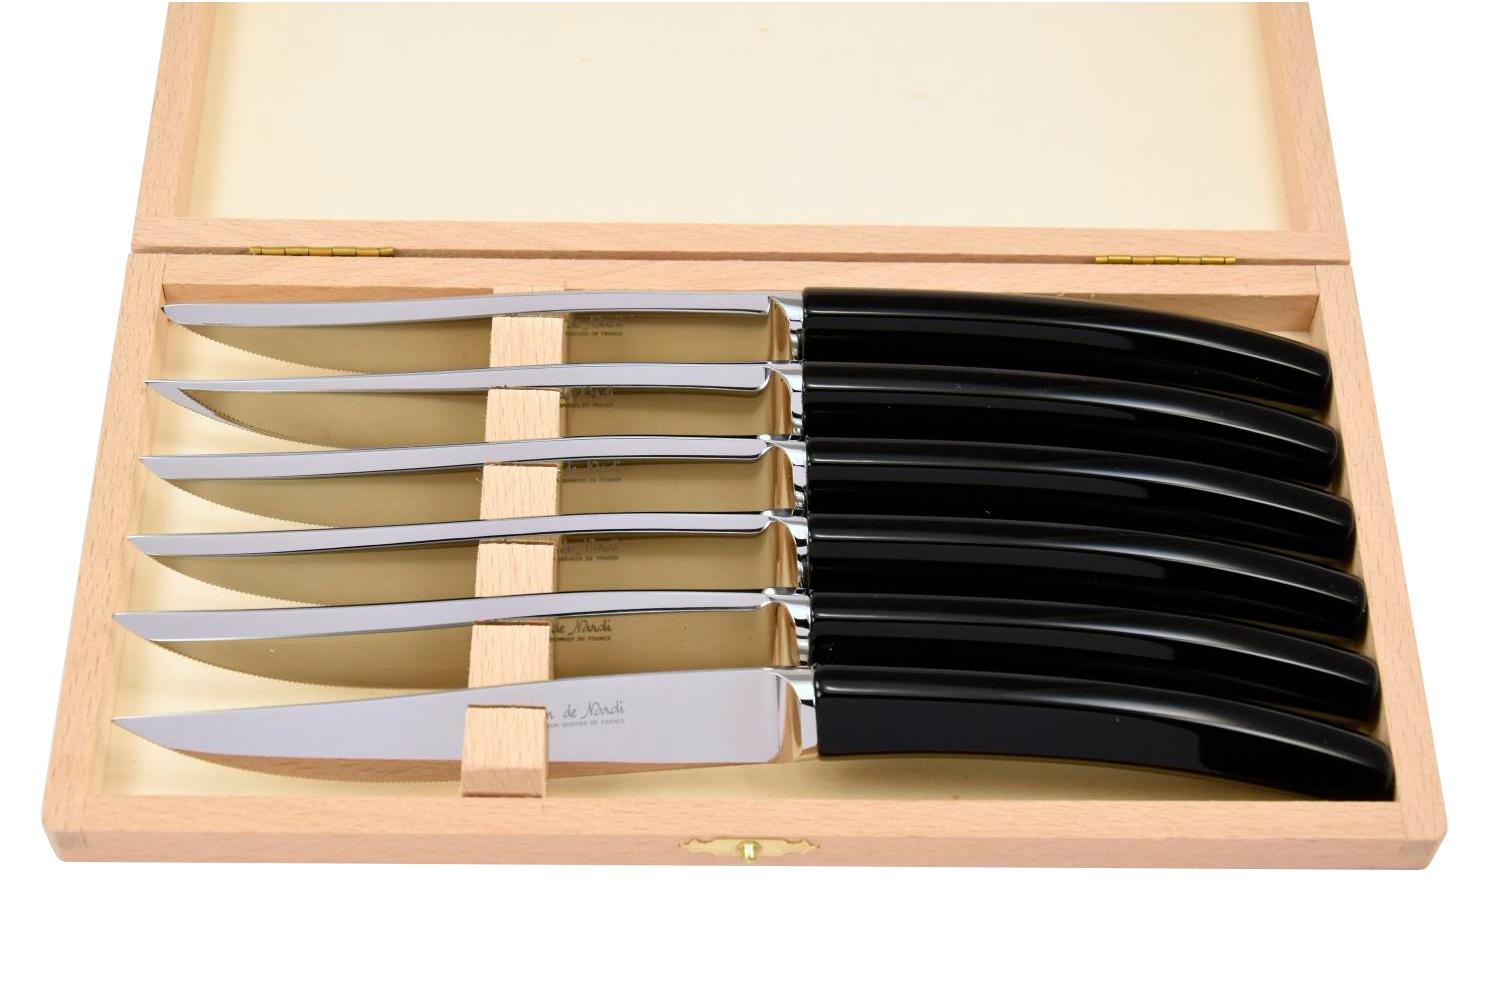 MODELE SILENE
couteau table par 6
manche plexi noir uni